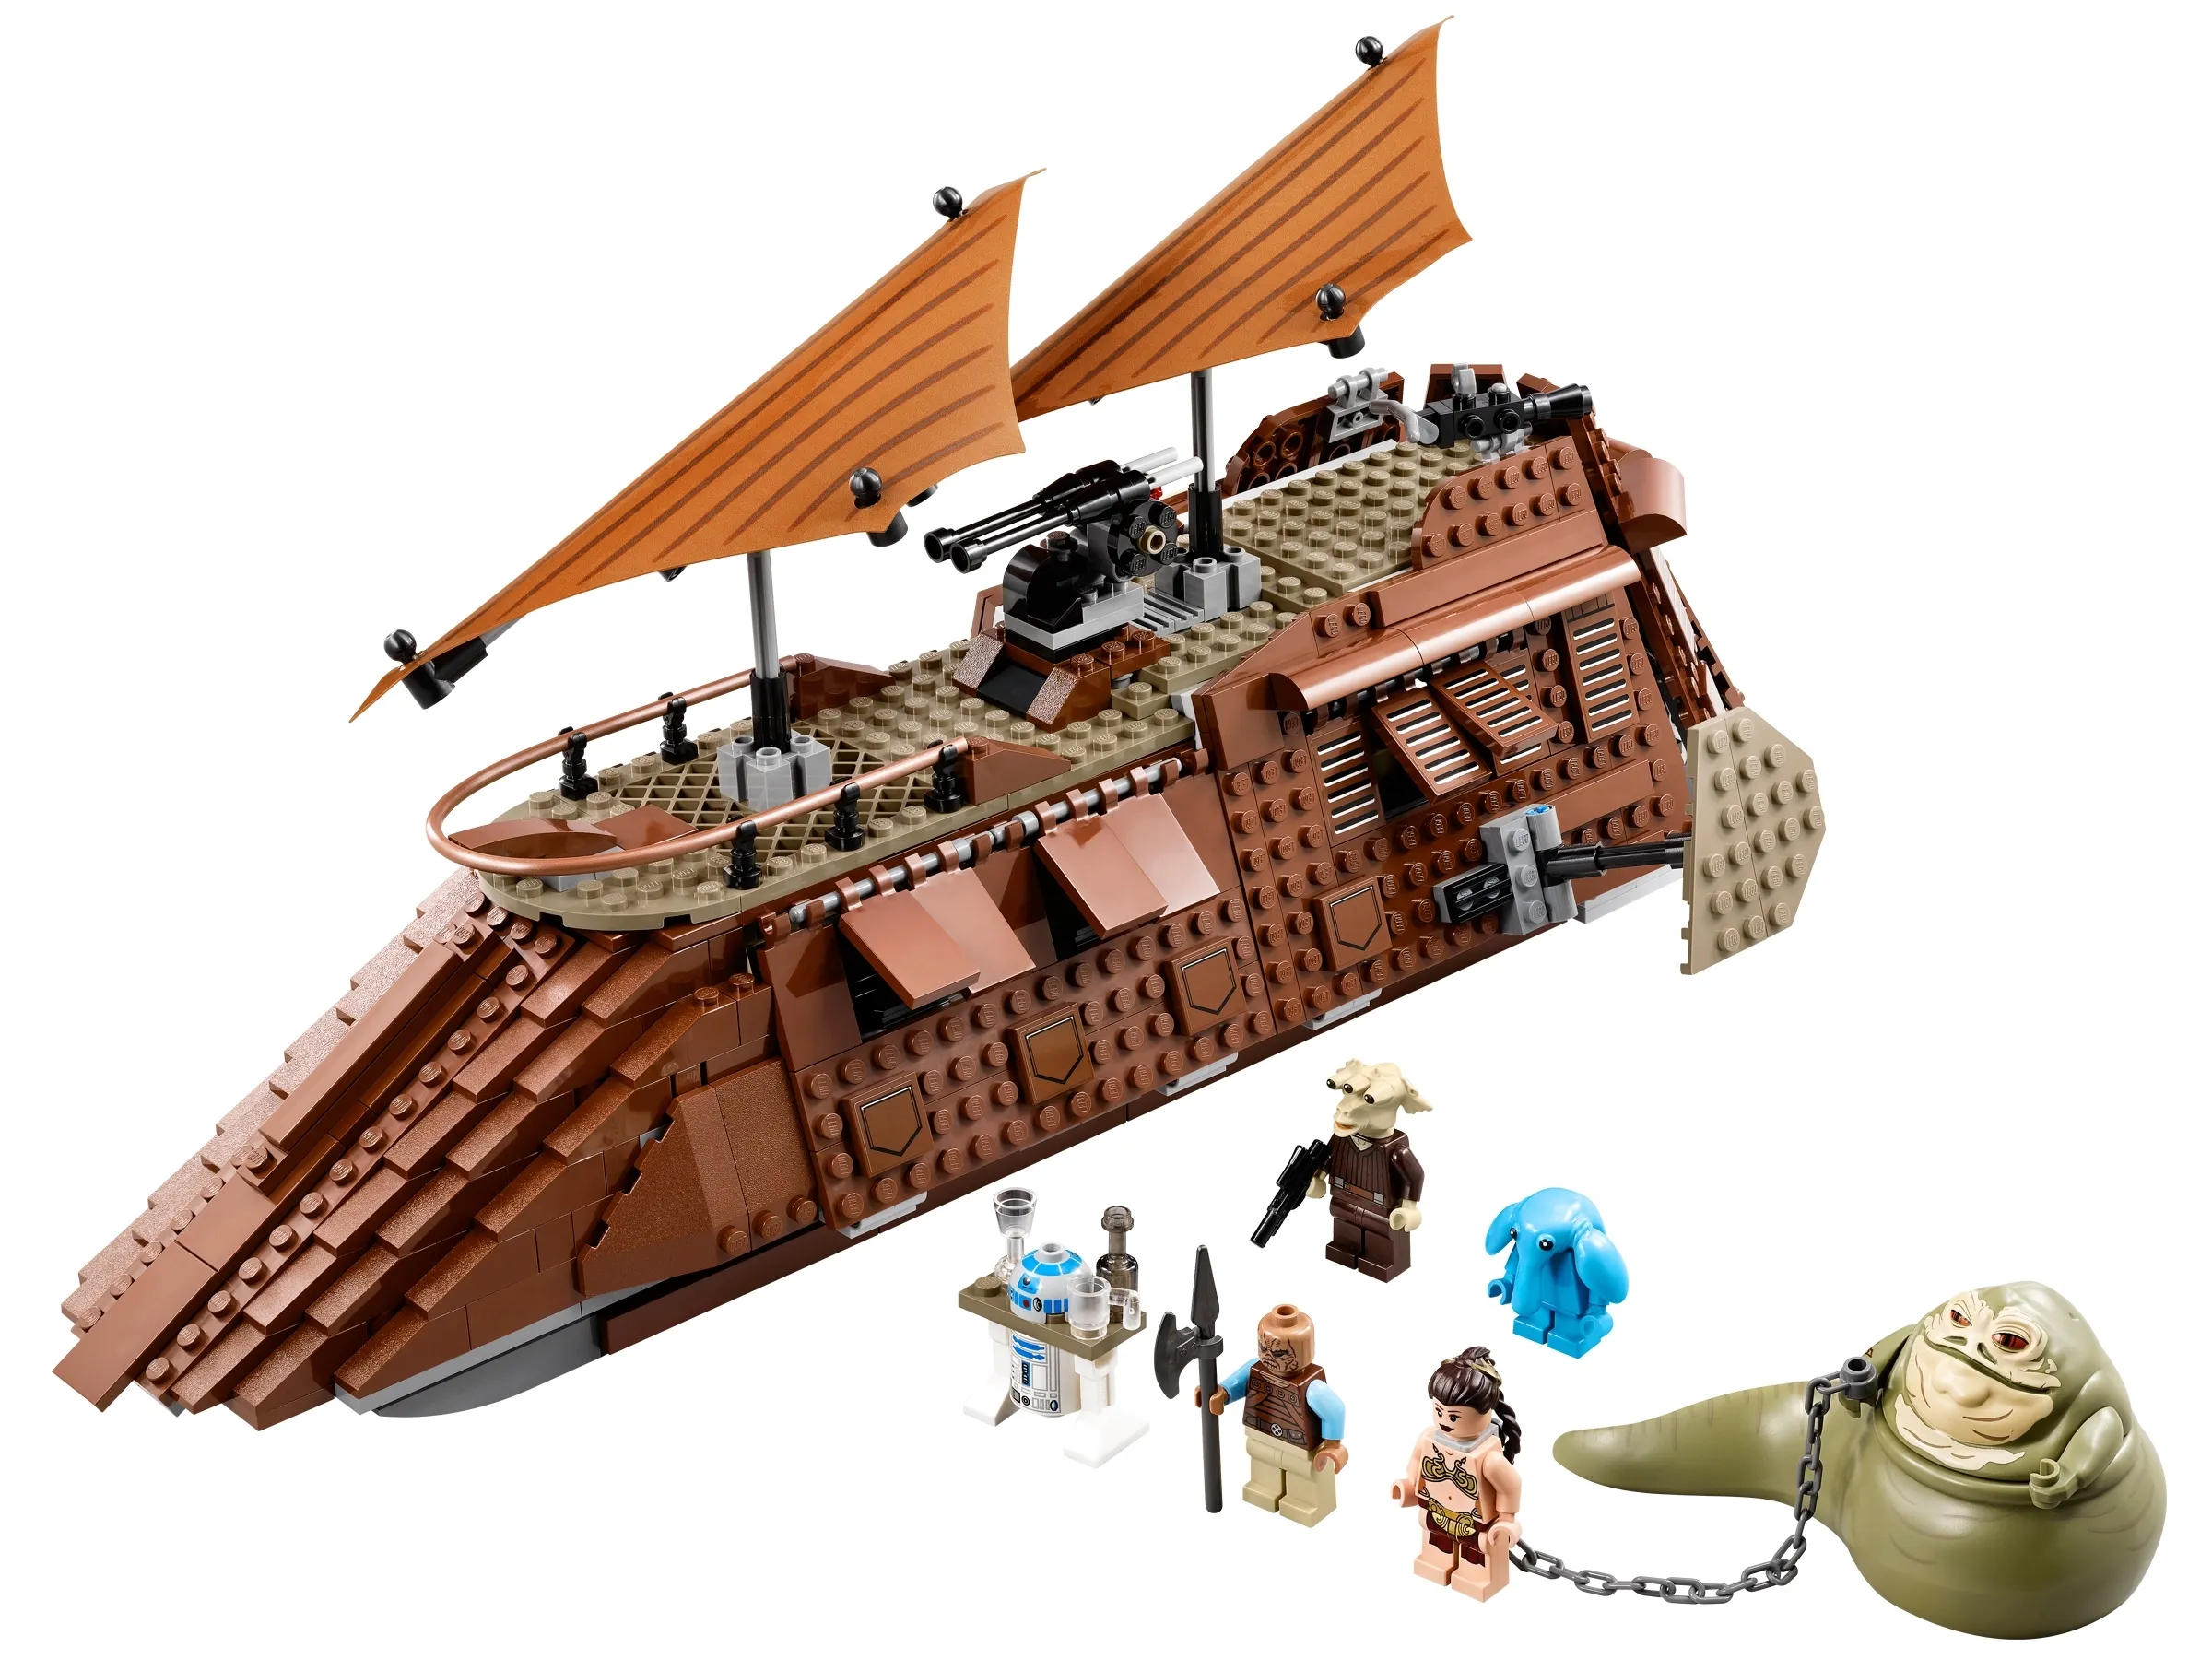 LEGO Star Wars Jabba's Sail Barge • Set 75020 • SetDB